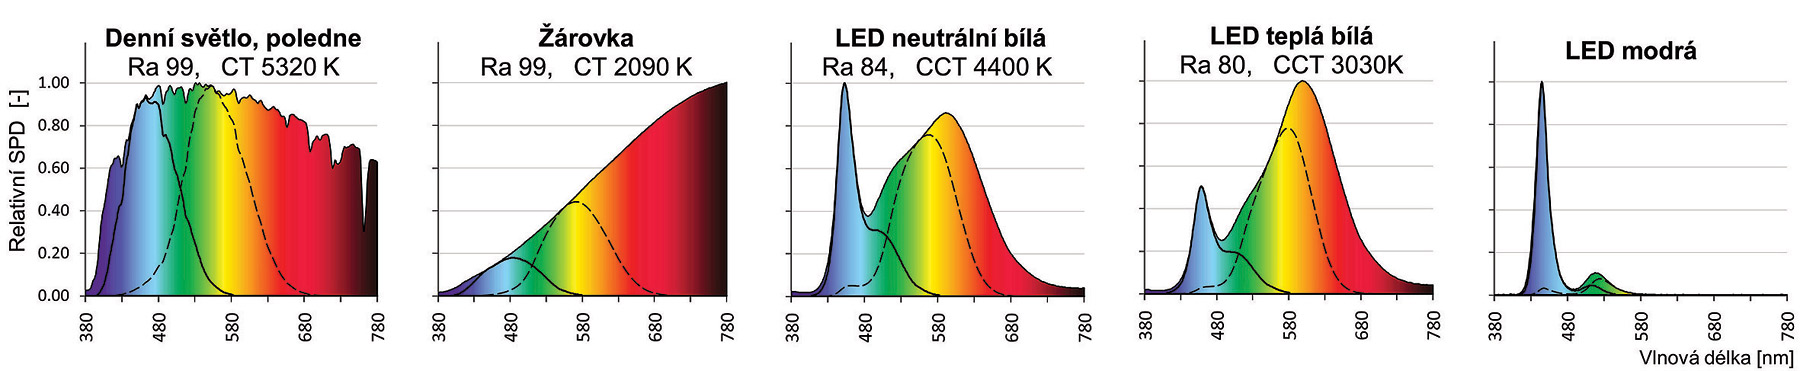 Obr. 2 Grafické porovnání zdrojů přirozeného světla a umělého osvětlení. Barevná plocha - celé spektrum zdroje. Čárkovaná křivka vyznačuje vizuálně aktivní část spektra, plná křivka vyznačuje cirkadiánně aktivní část spektra. Ra – index podání barev, CT – teplota chromatičnosti. Převzato z Maierová 2016.